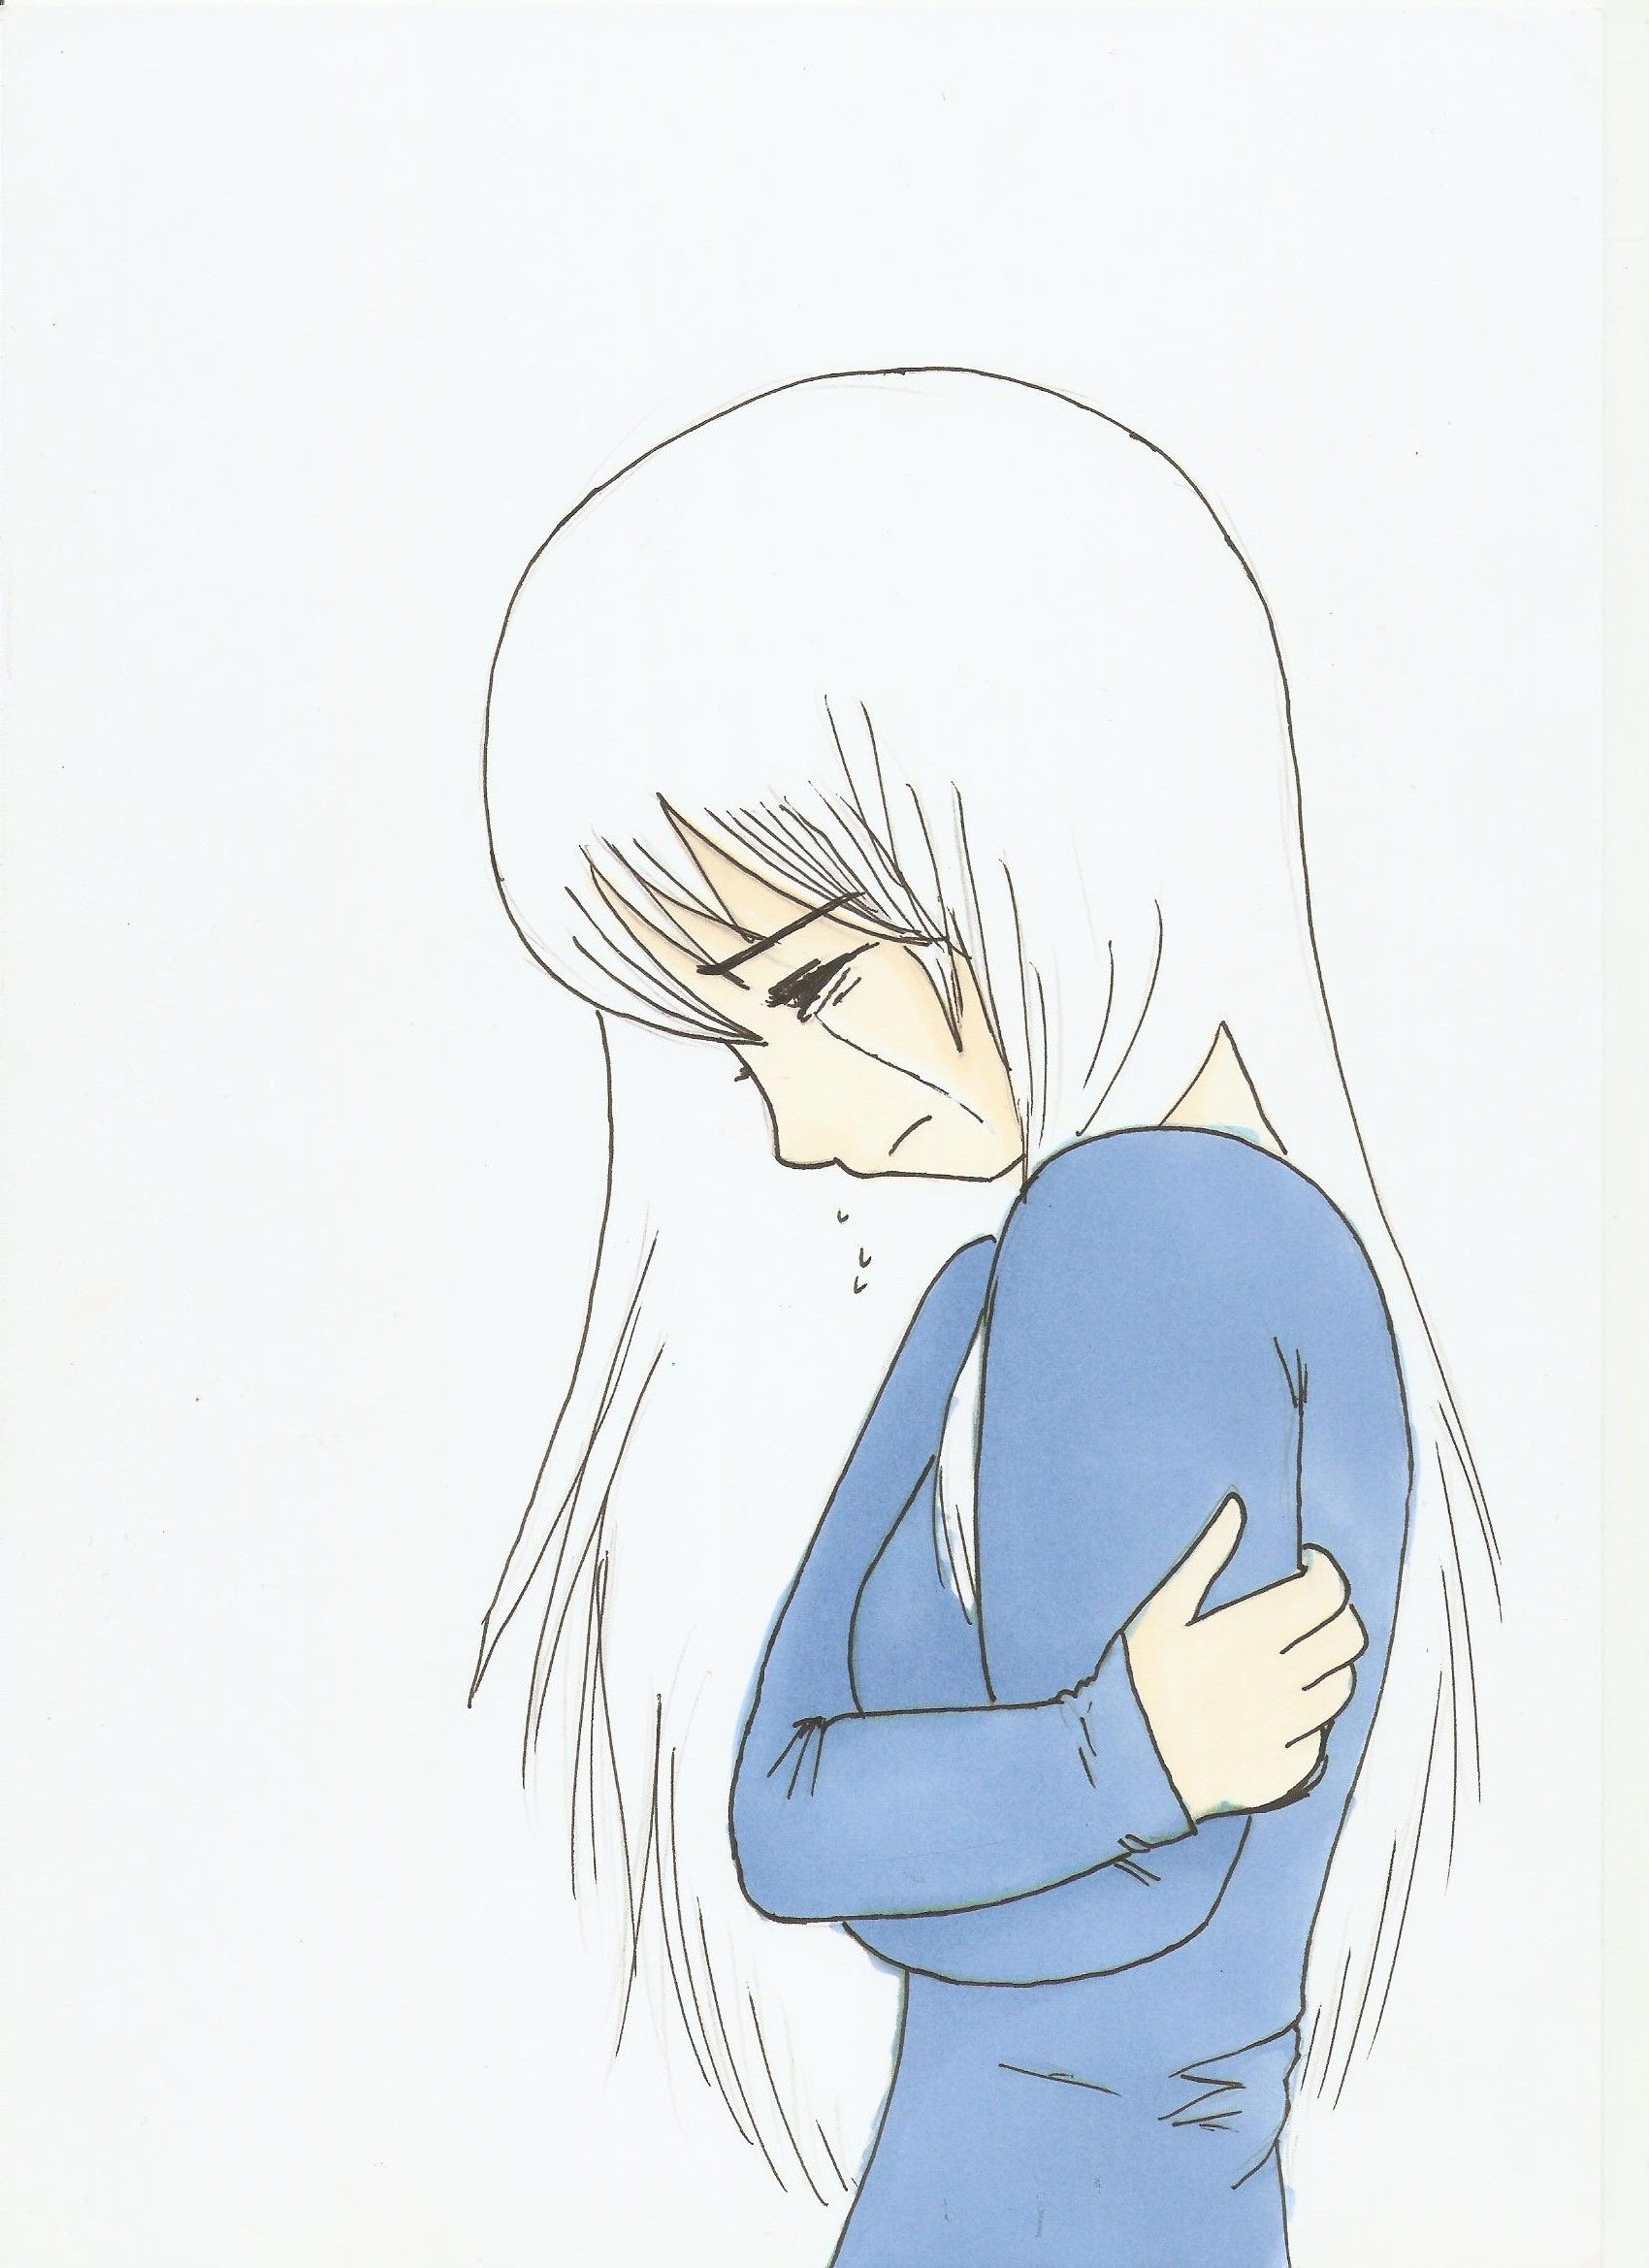 Sad Anime Girl Crying Sketch